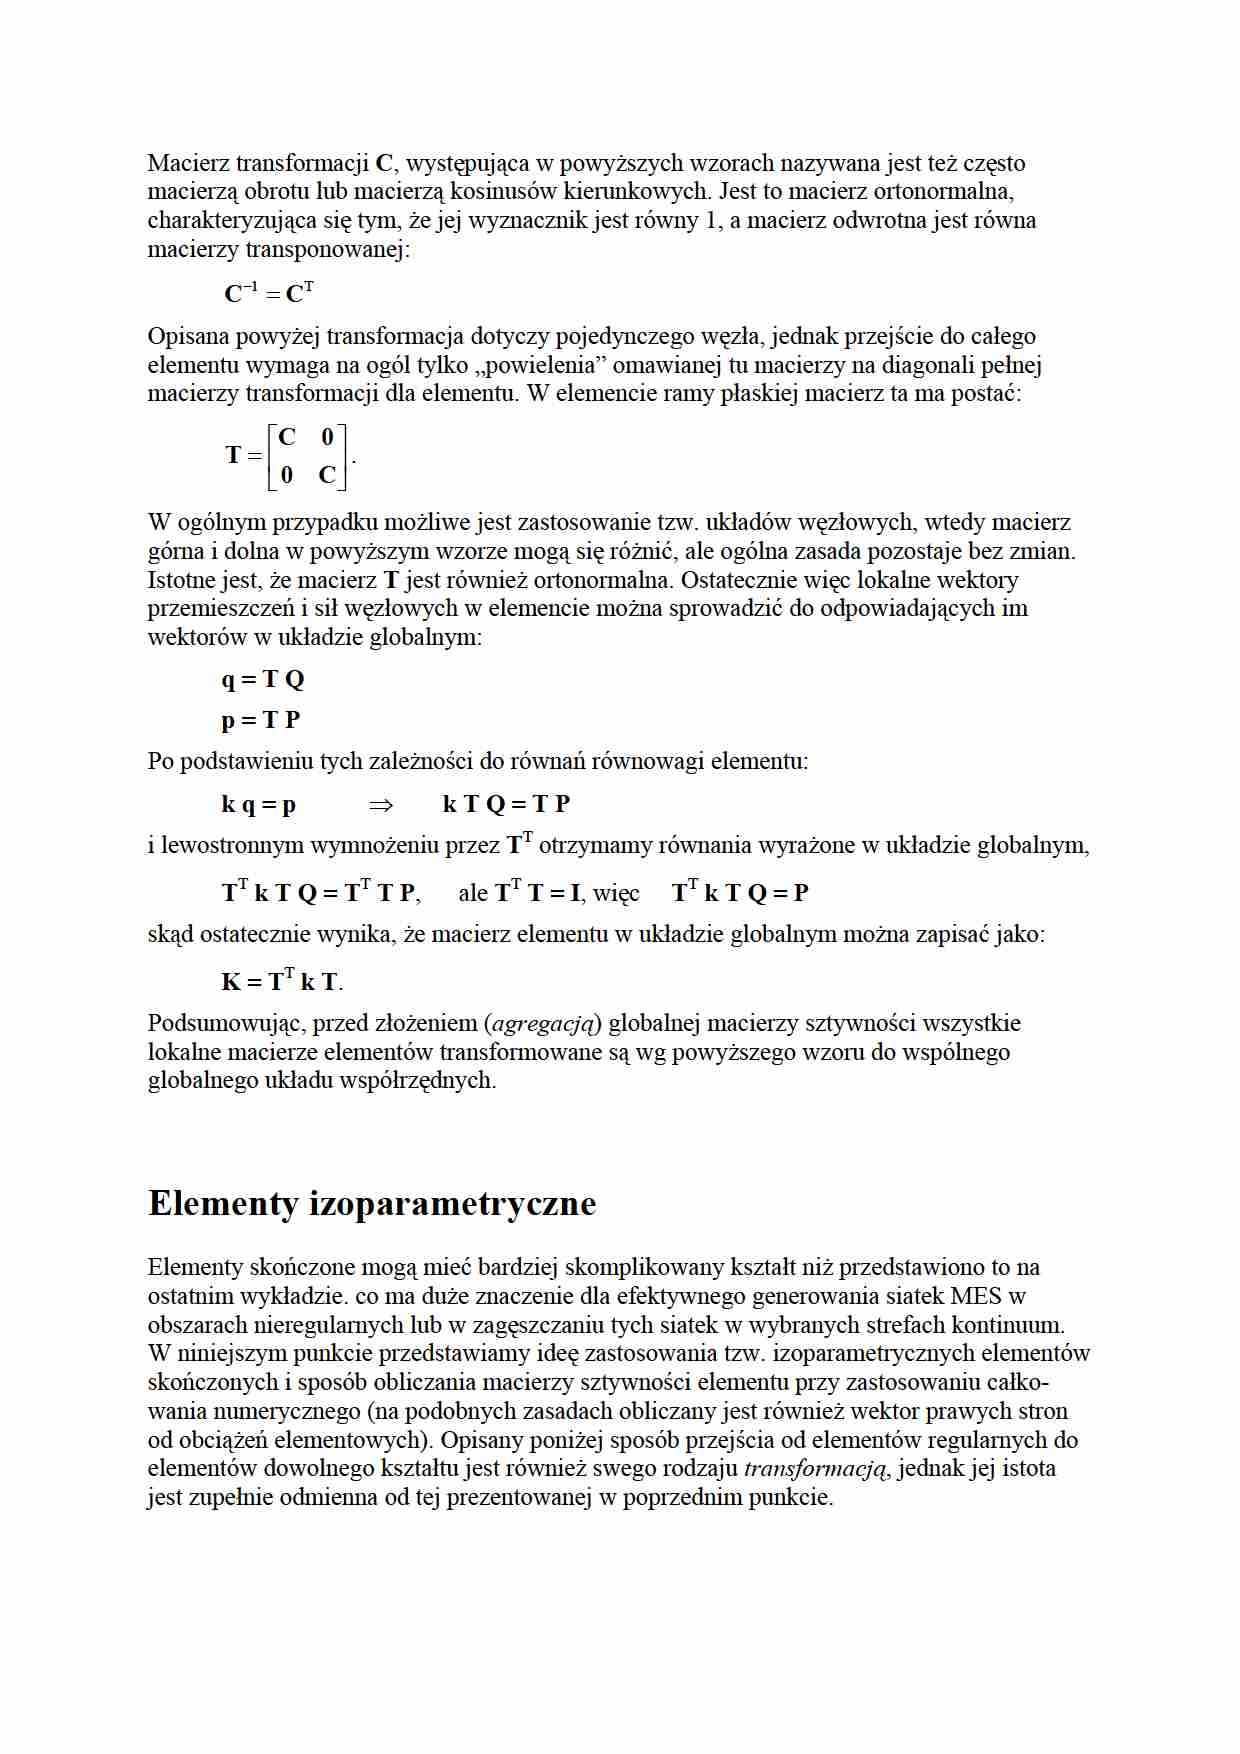 Elementy izoparametryczne - wykład - strona 1